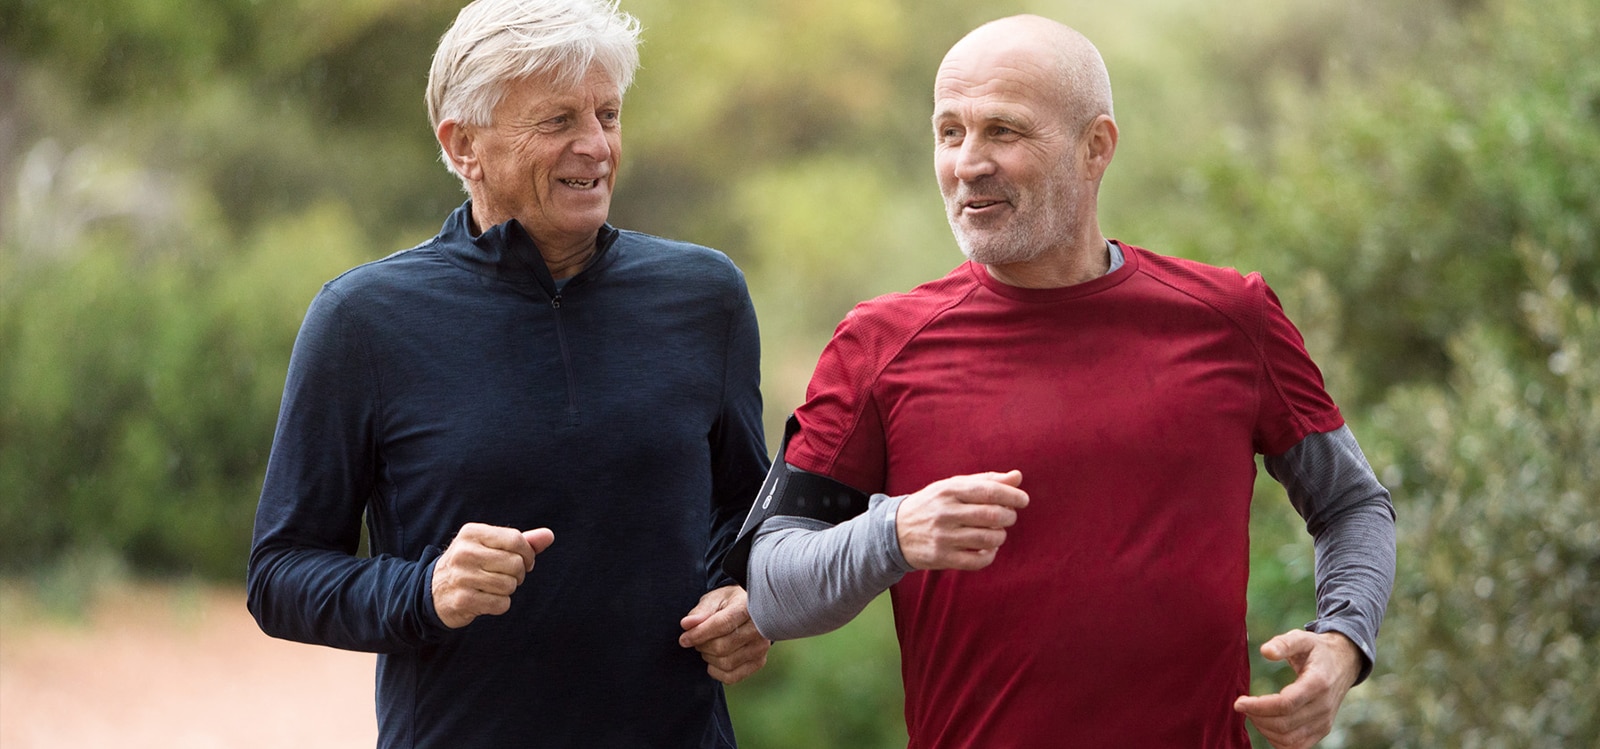 Dos hombres entre 50 y 60 años corren al aire libre